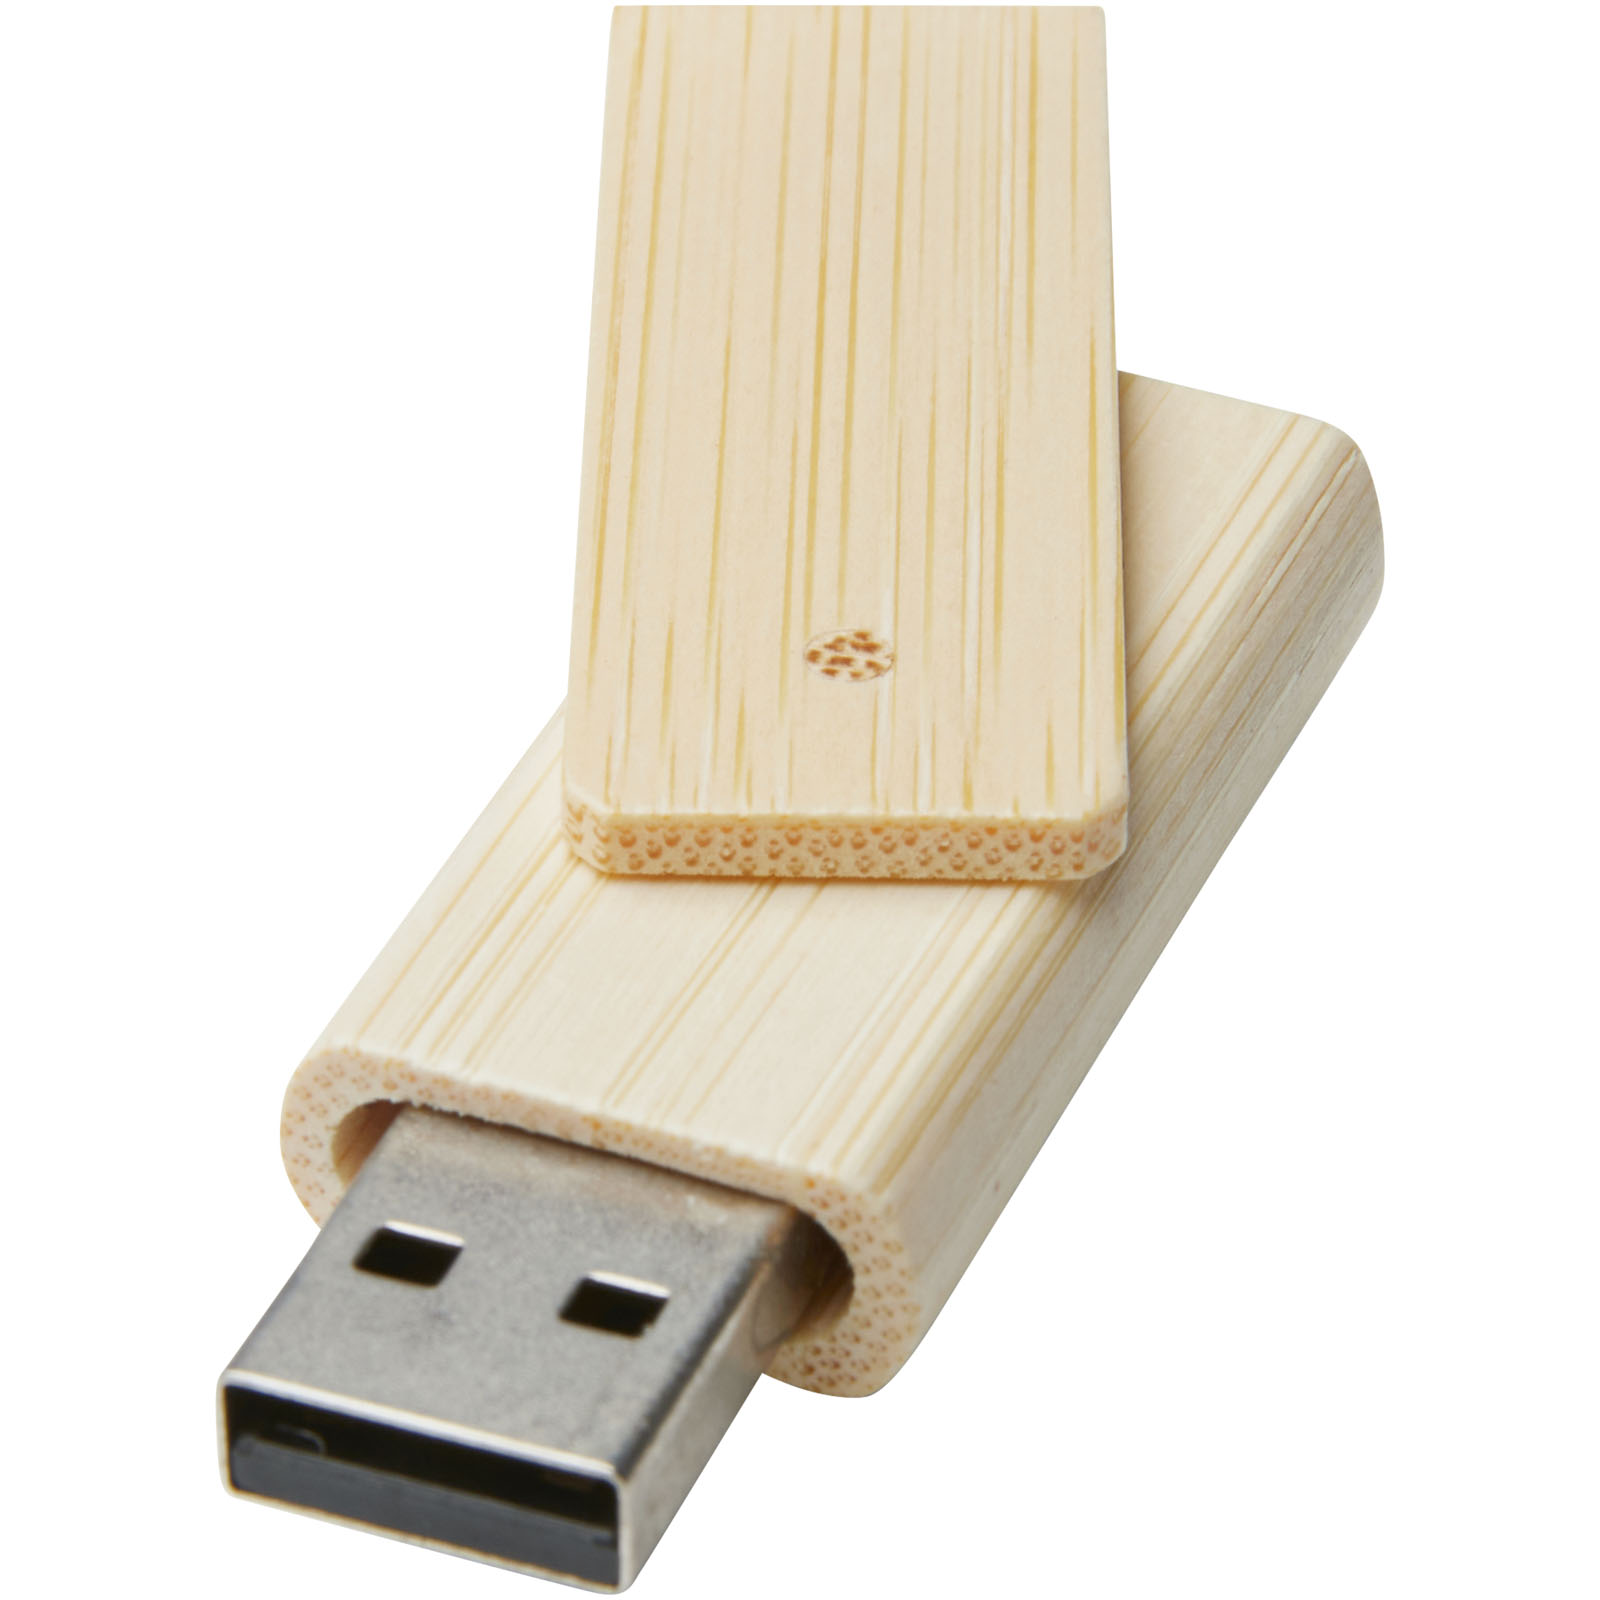 Clés USB publicitaires - Clé USB Rotate 8 Go en bambou - 0